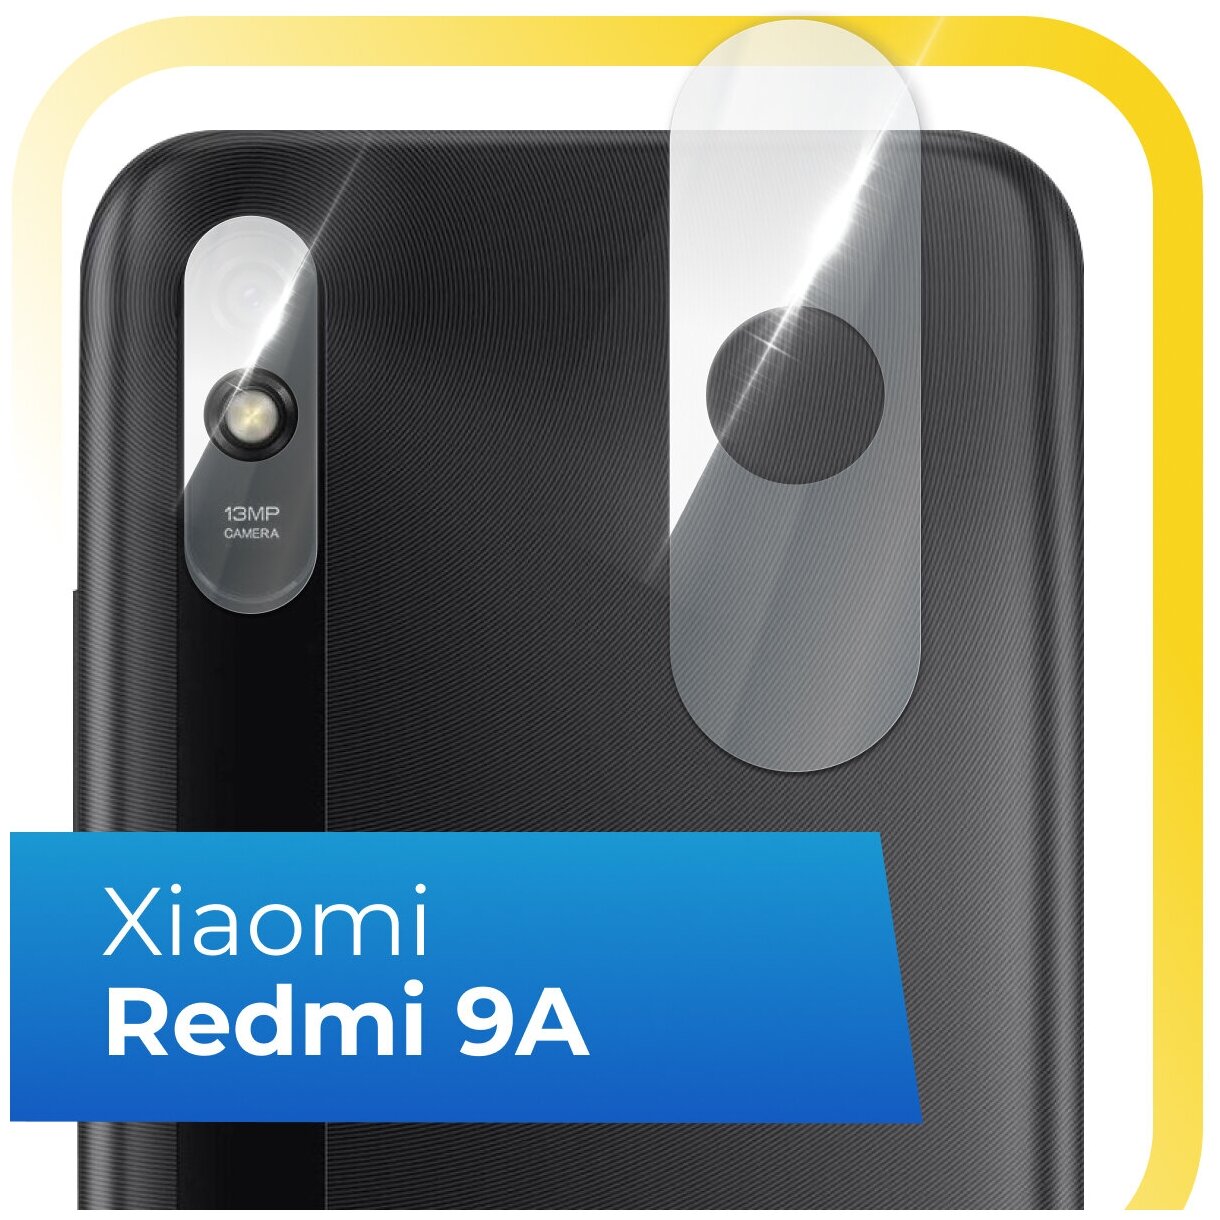 Защитное стекло на камеру телефона Xiaomi Redmi 9A / Противоударное стекло для задней камеры смартфона Сяоми Редми 9А / Прозрачное